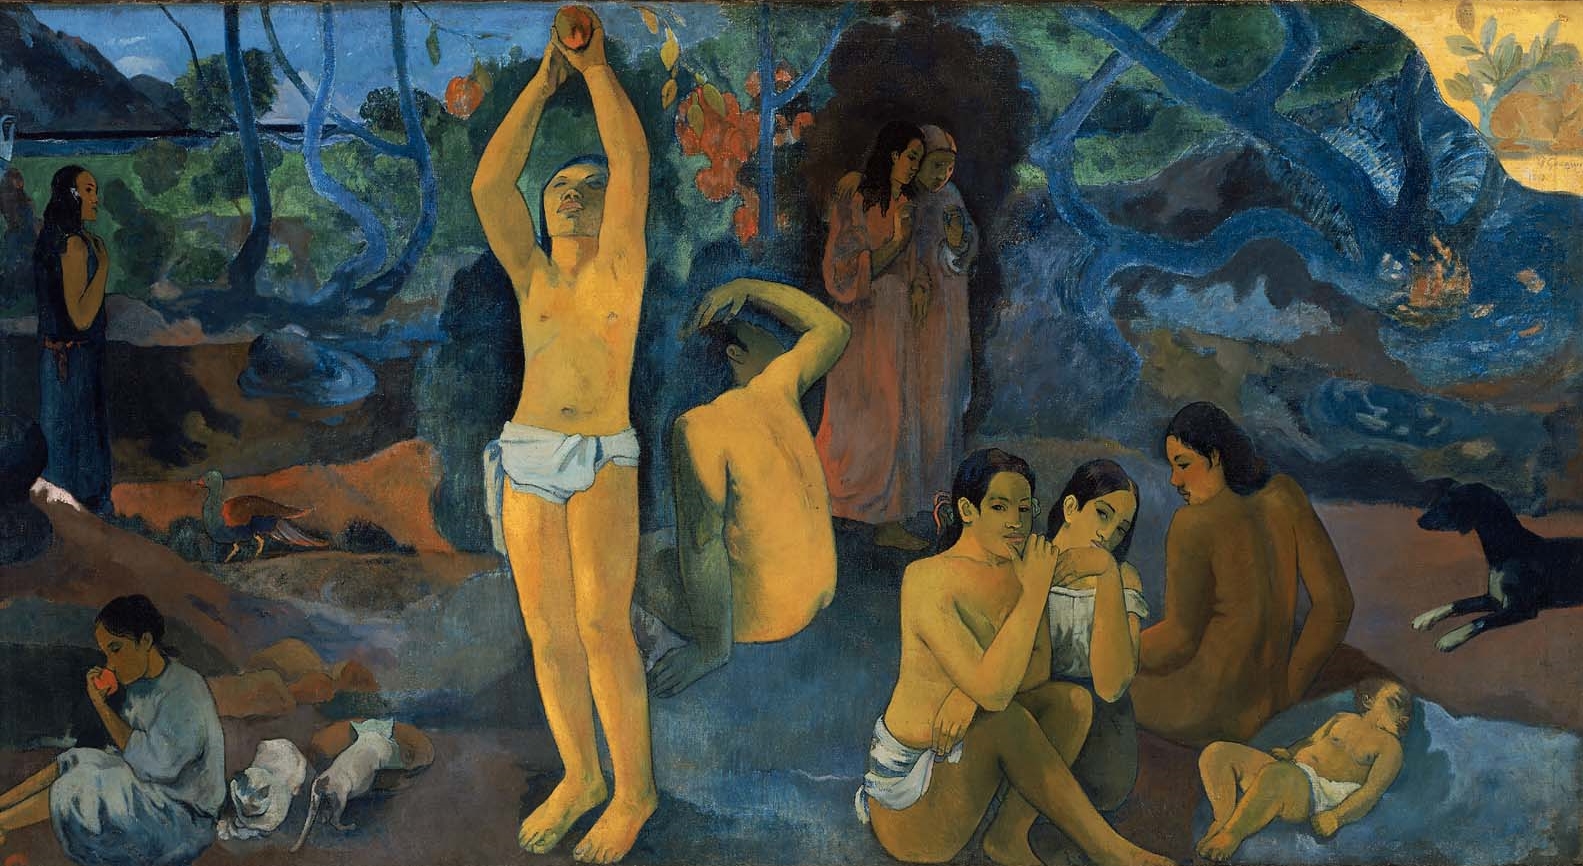 Paul+Gauguin-1848-1903 (428).jpg